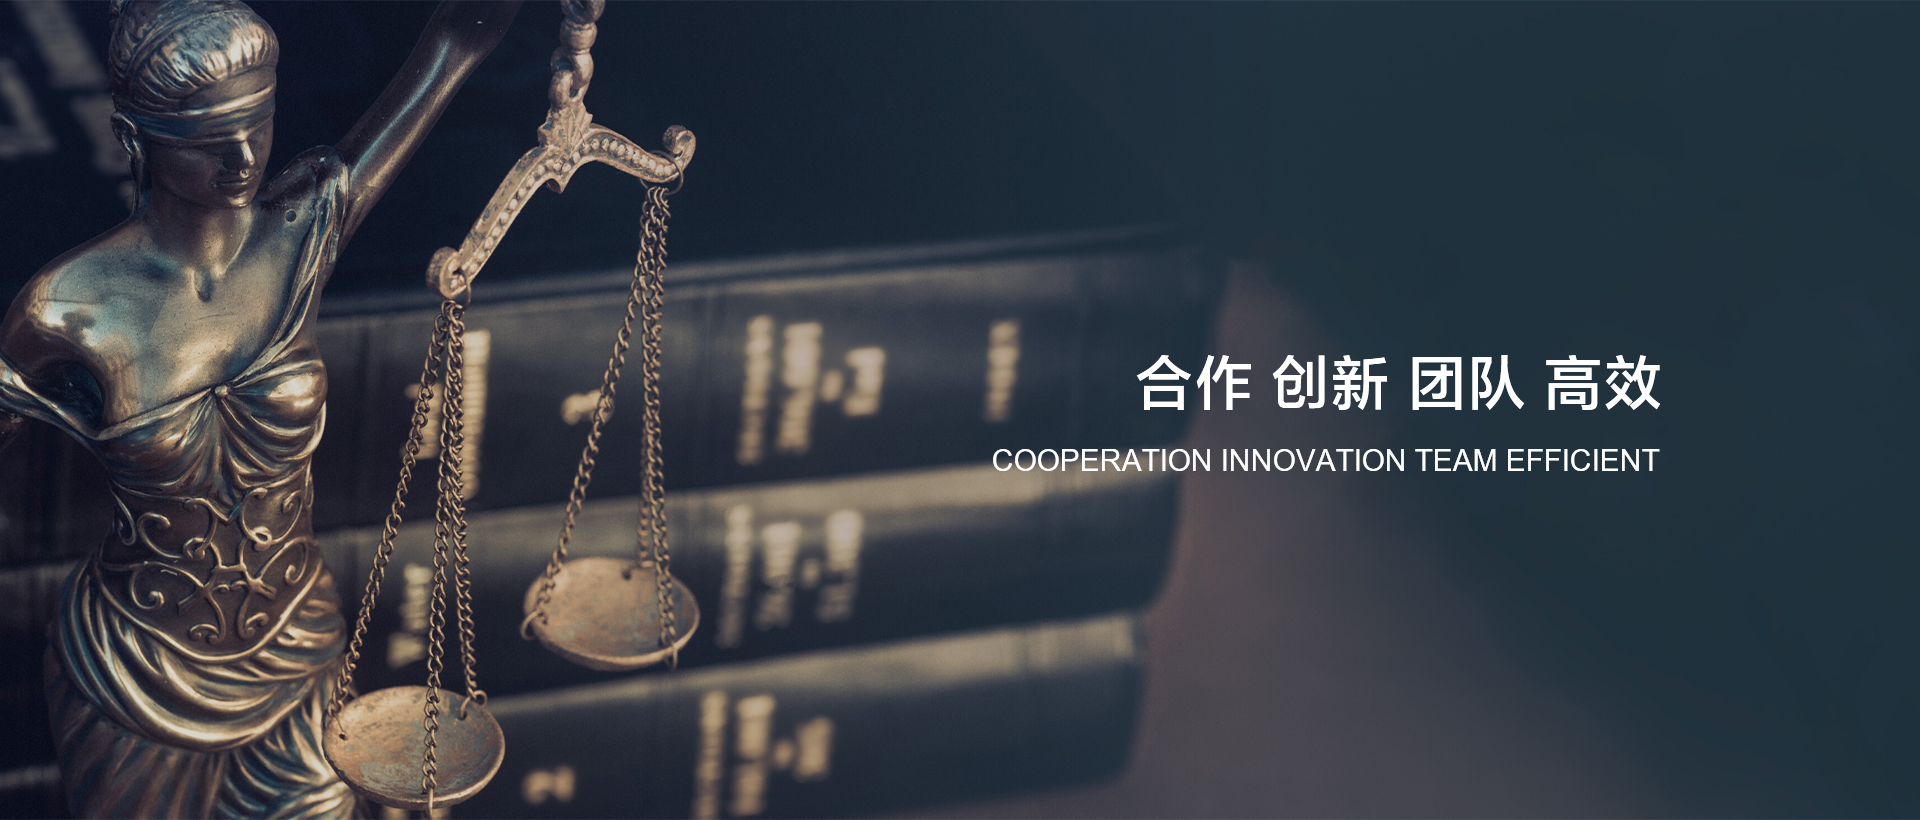 网站首页-浙江纳森律师事务所